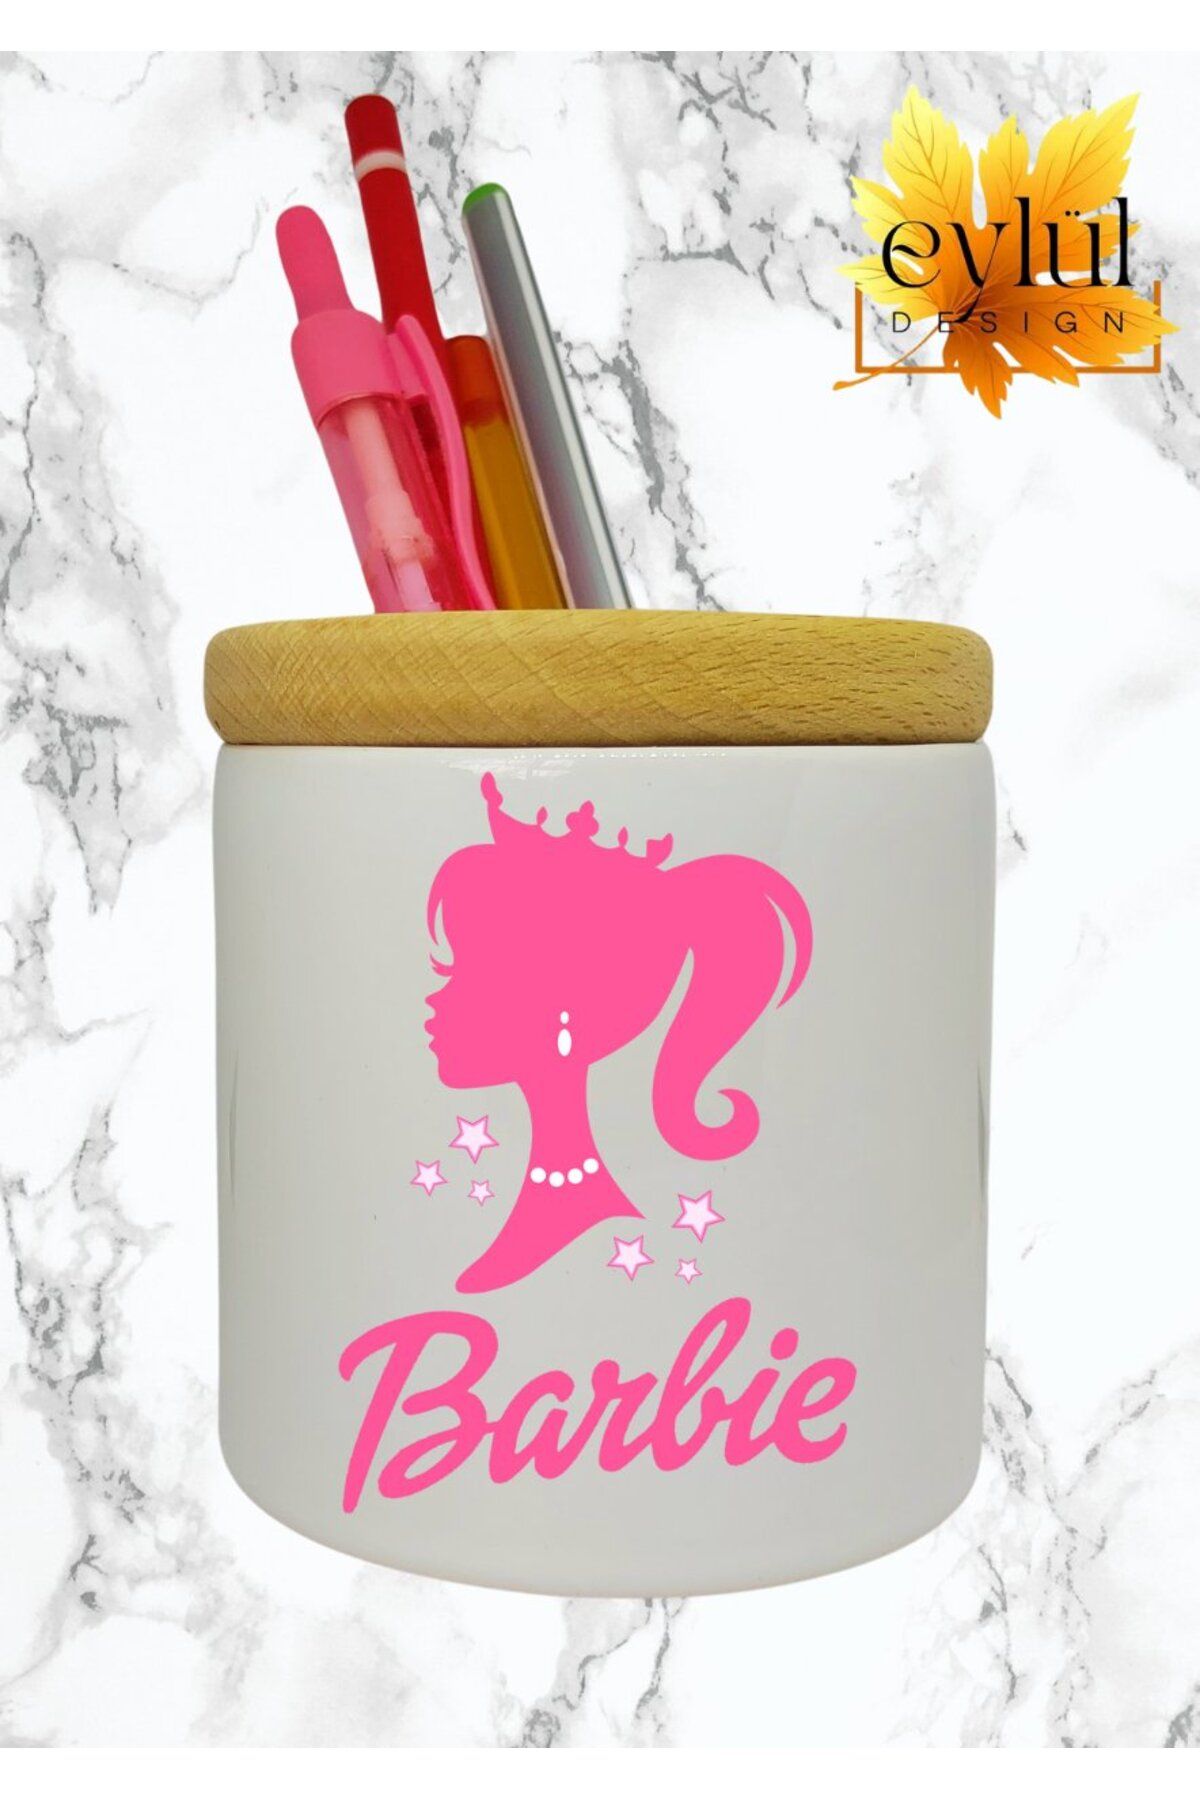 Eylül Design Barbie Baskılı Seramik Masaüstü Kalemlik Ahşap Detaylı Kalem Kutusu Doğum Günü Hediyesi